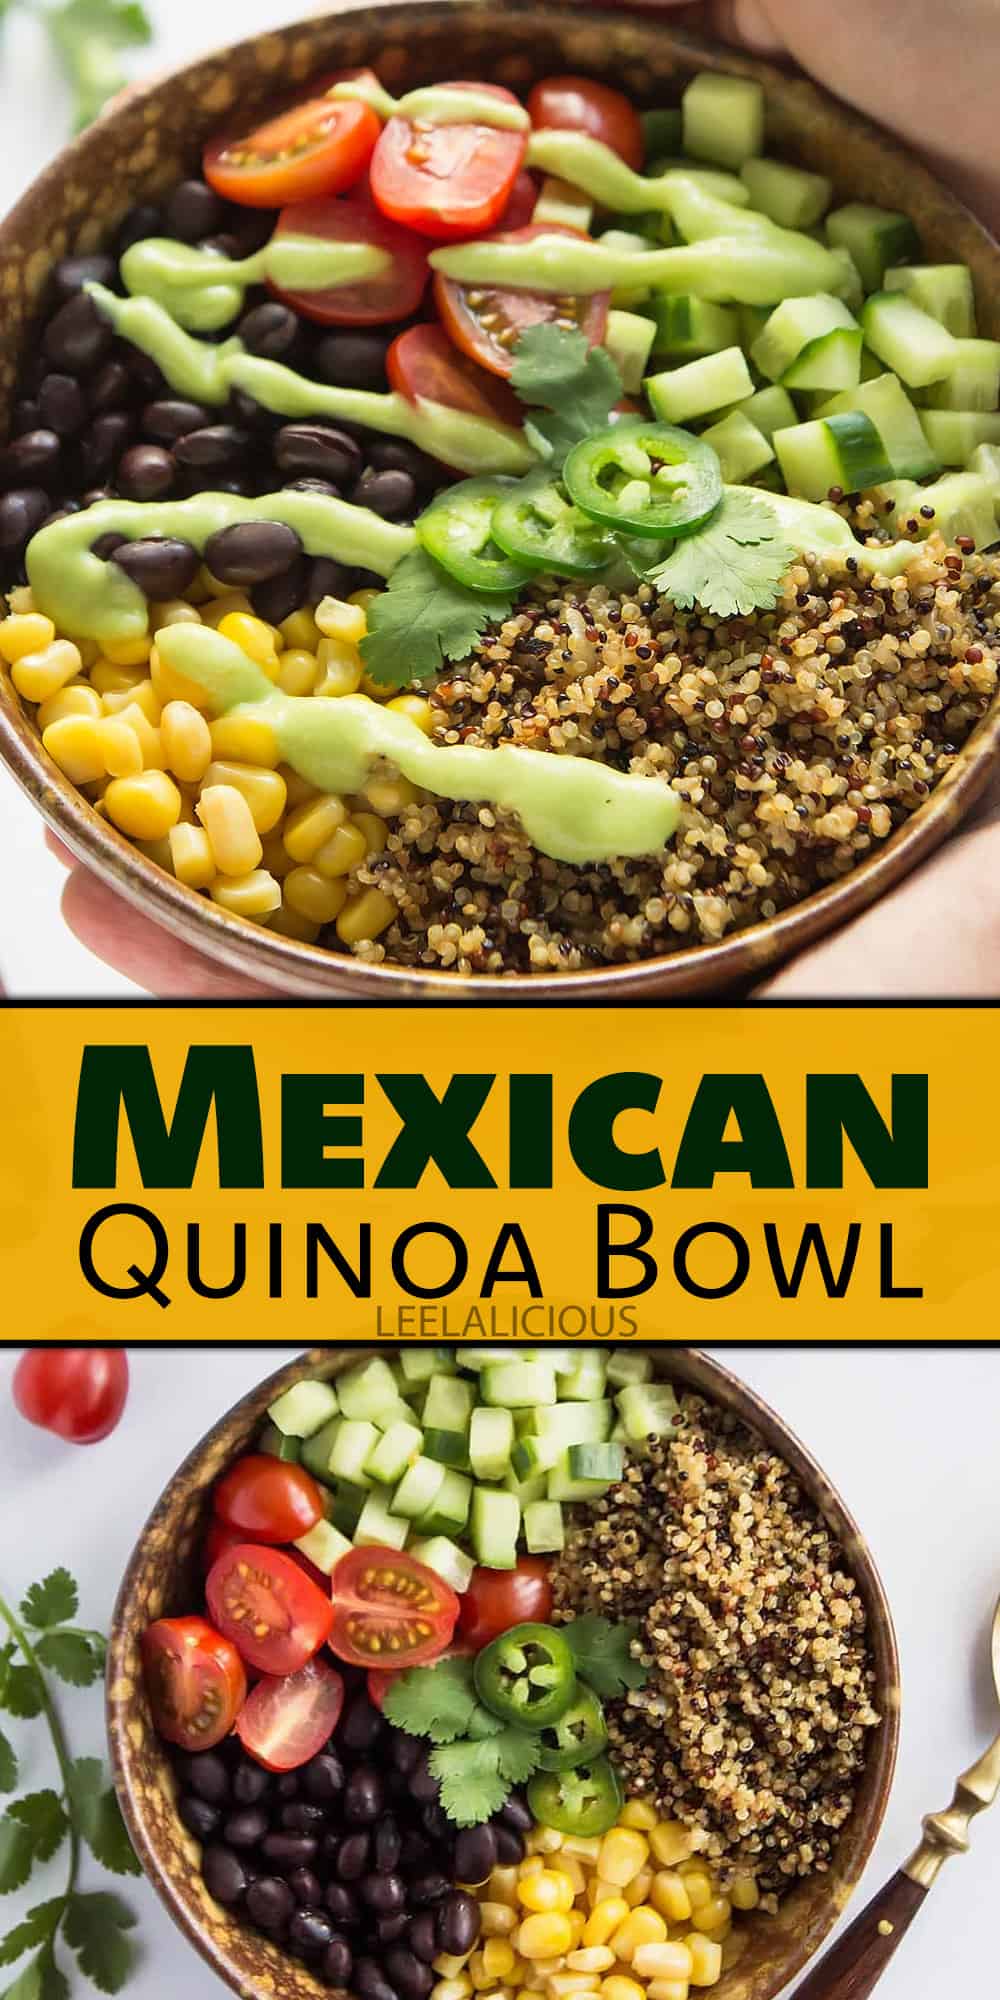 Mexican Quinoa Bowl with Avocado Salsa